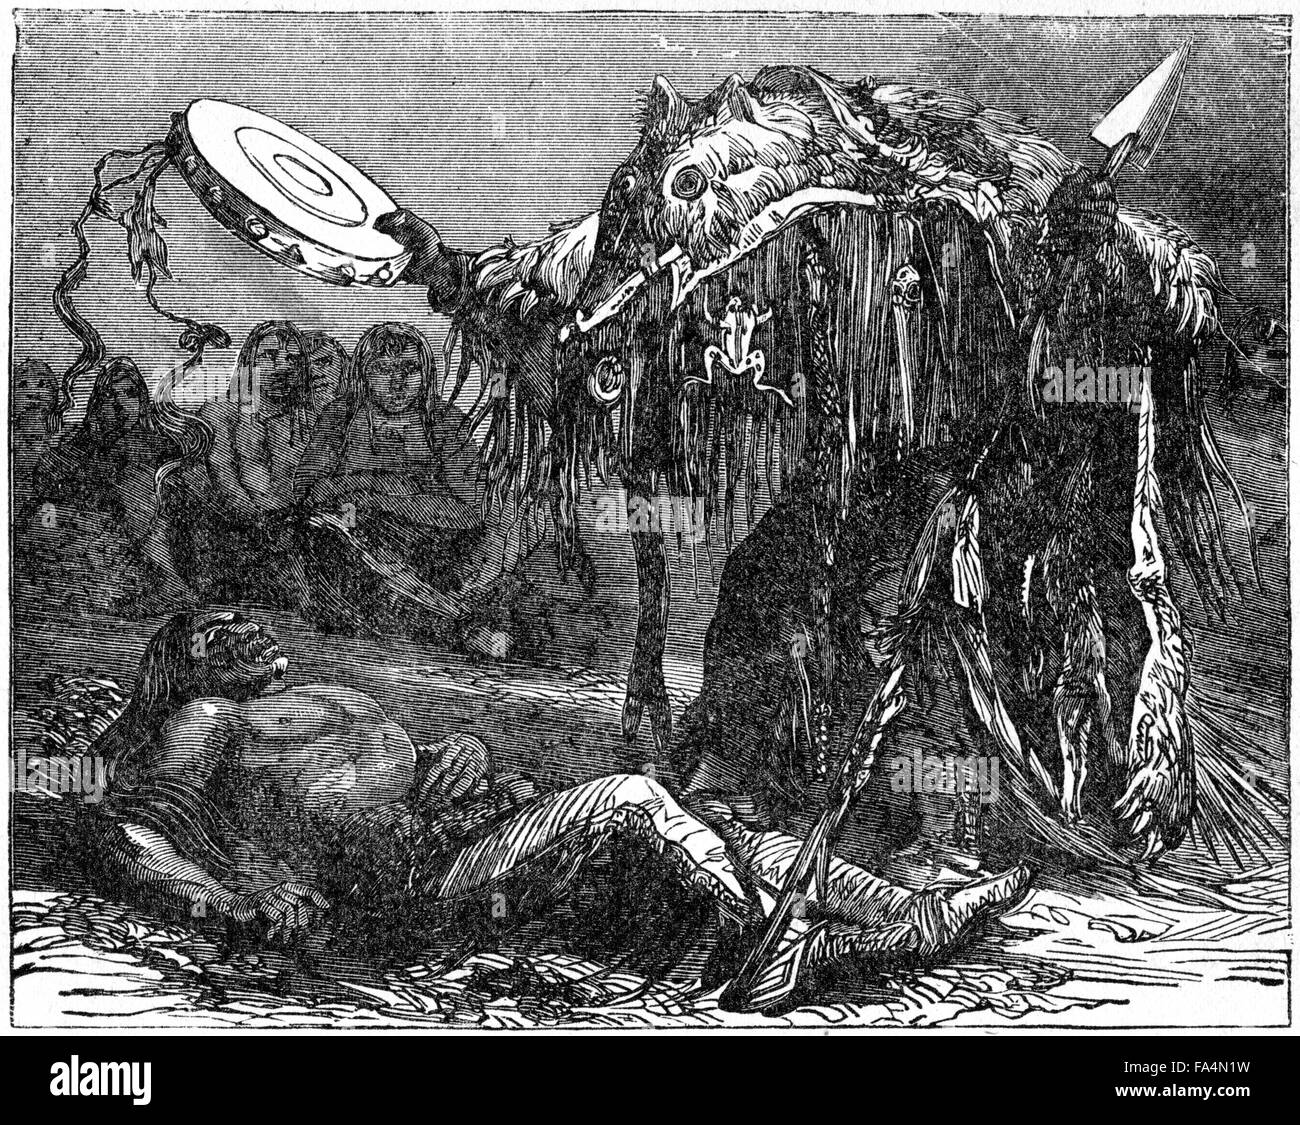 "Medicine Man seine Beschwörungen durchführen", Stamm nicht angegeben, Buchillustration vom "Indischen Schrecken oder Massaker von the Red Men", durch Henry Davenport Northrop, 1891 Stockfoto